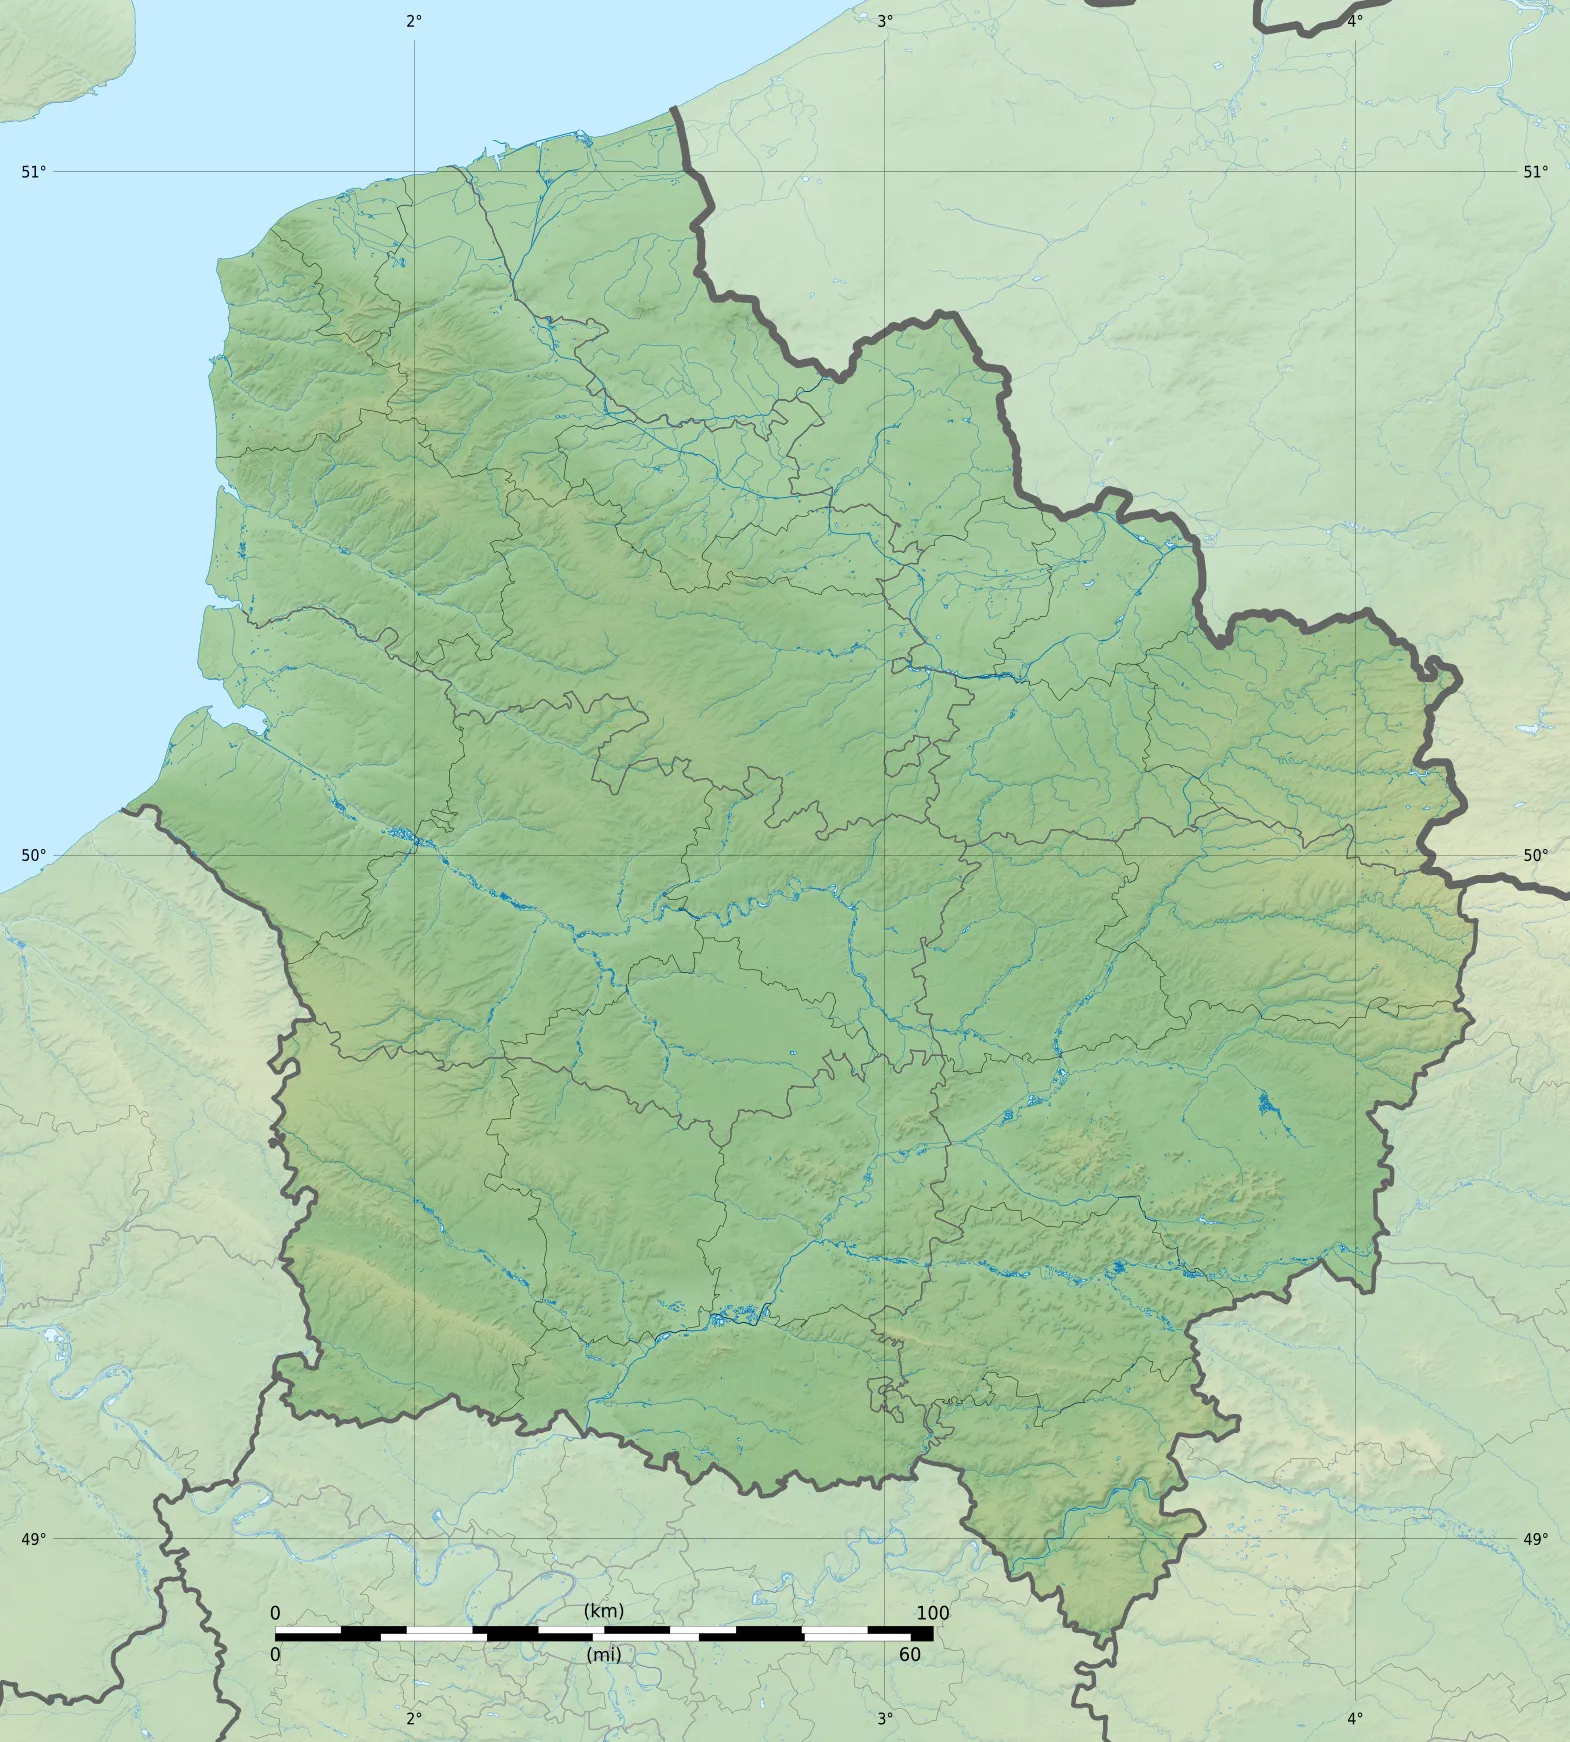 Photo showing: Carte topographique vierge de la région Hauts-de-France, France, destinée à la géolocalisation.